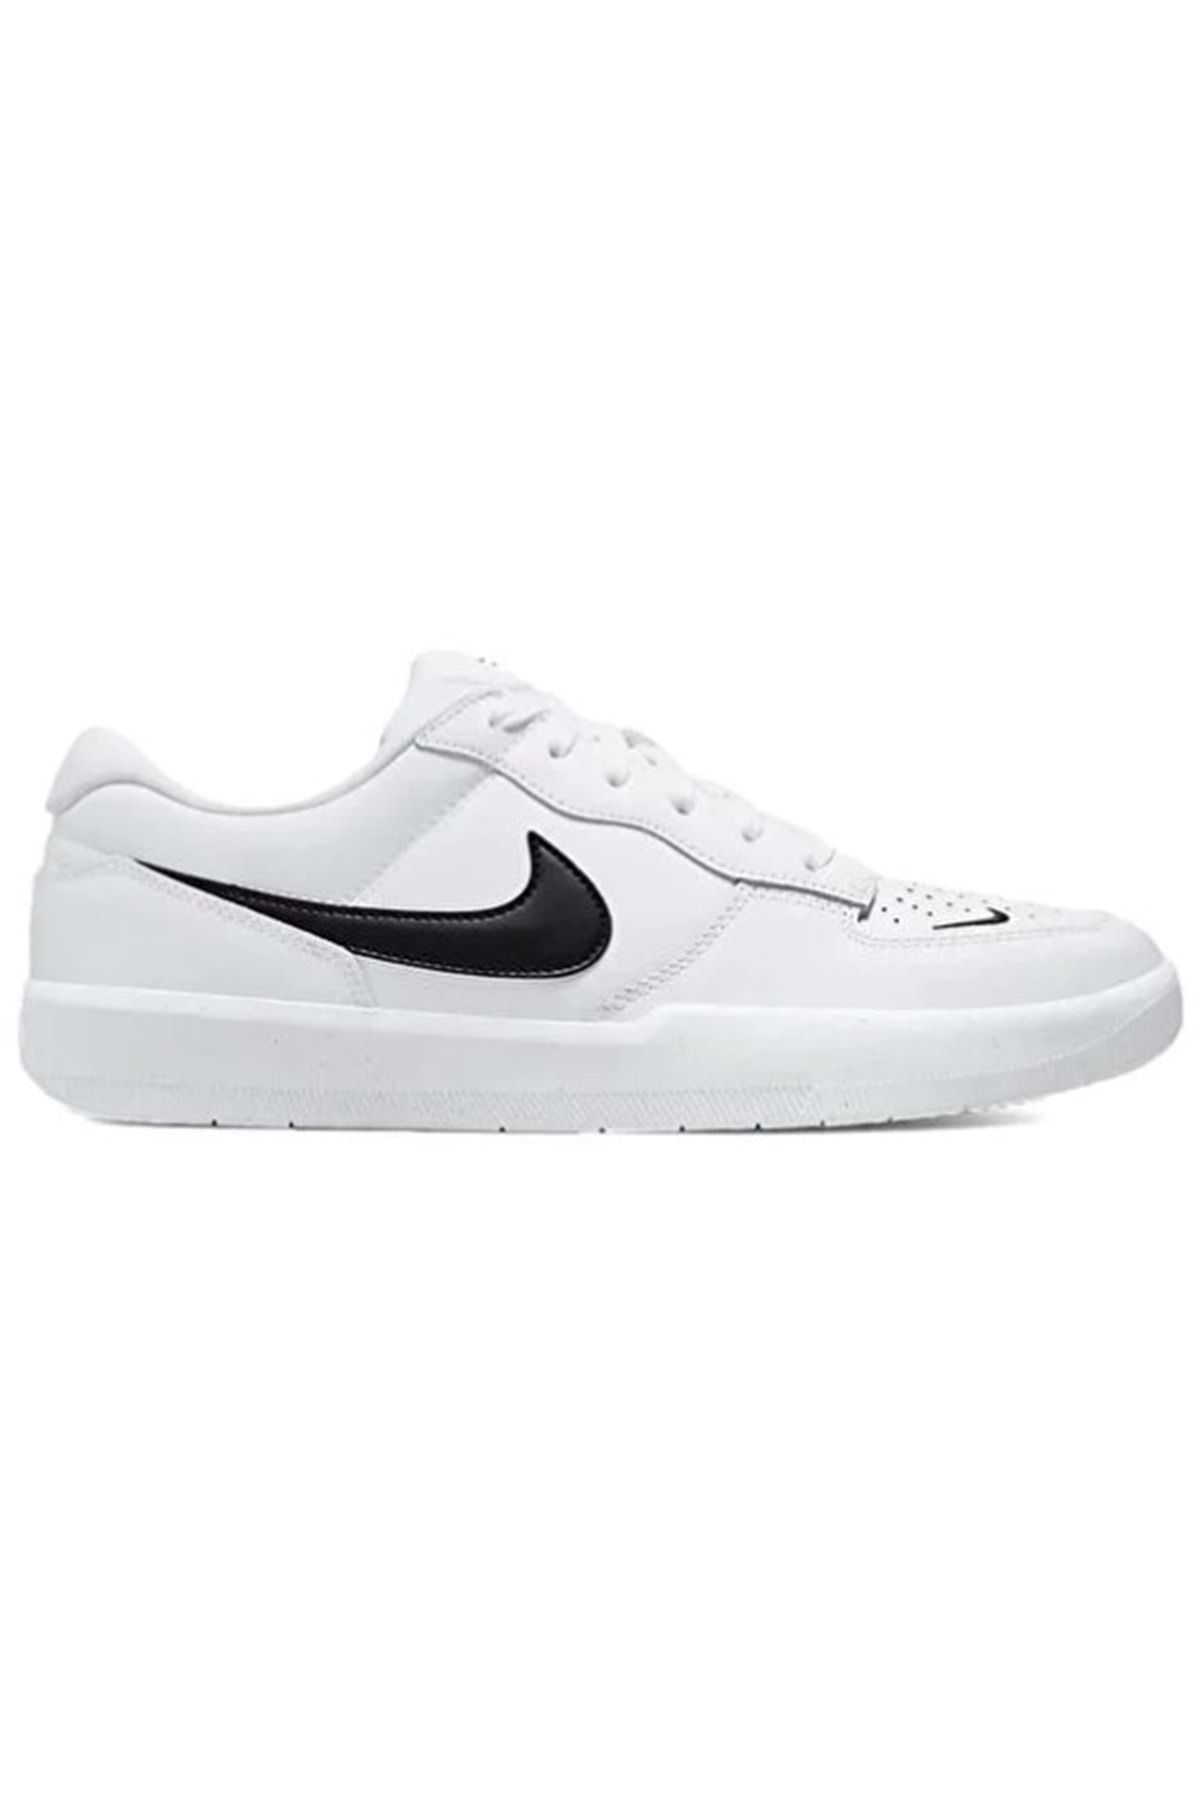 Nike Sb Force 58 Premium Dh7505-101 Sneaker Unisex Spor Ayakkabı Beyaz